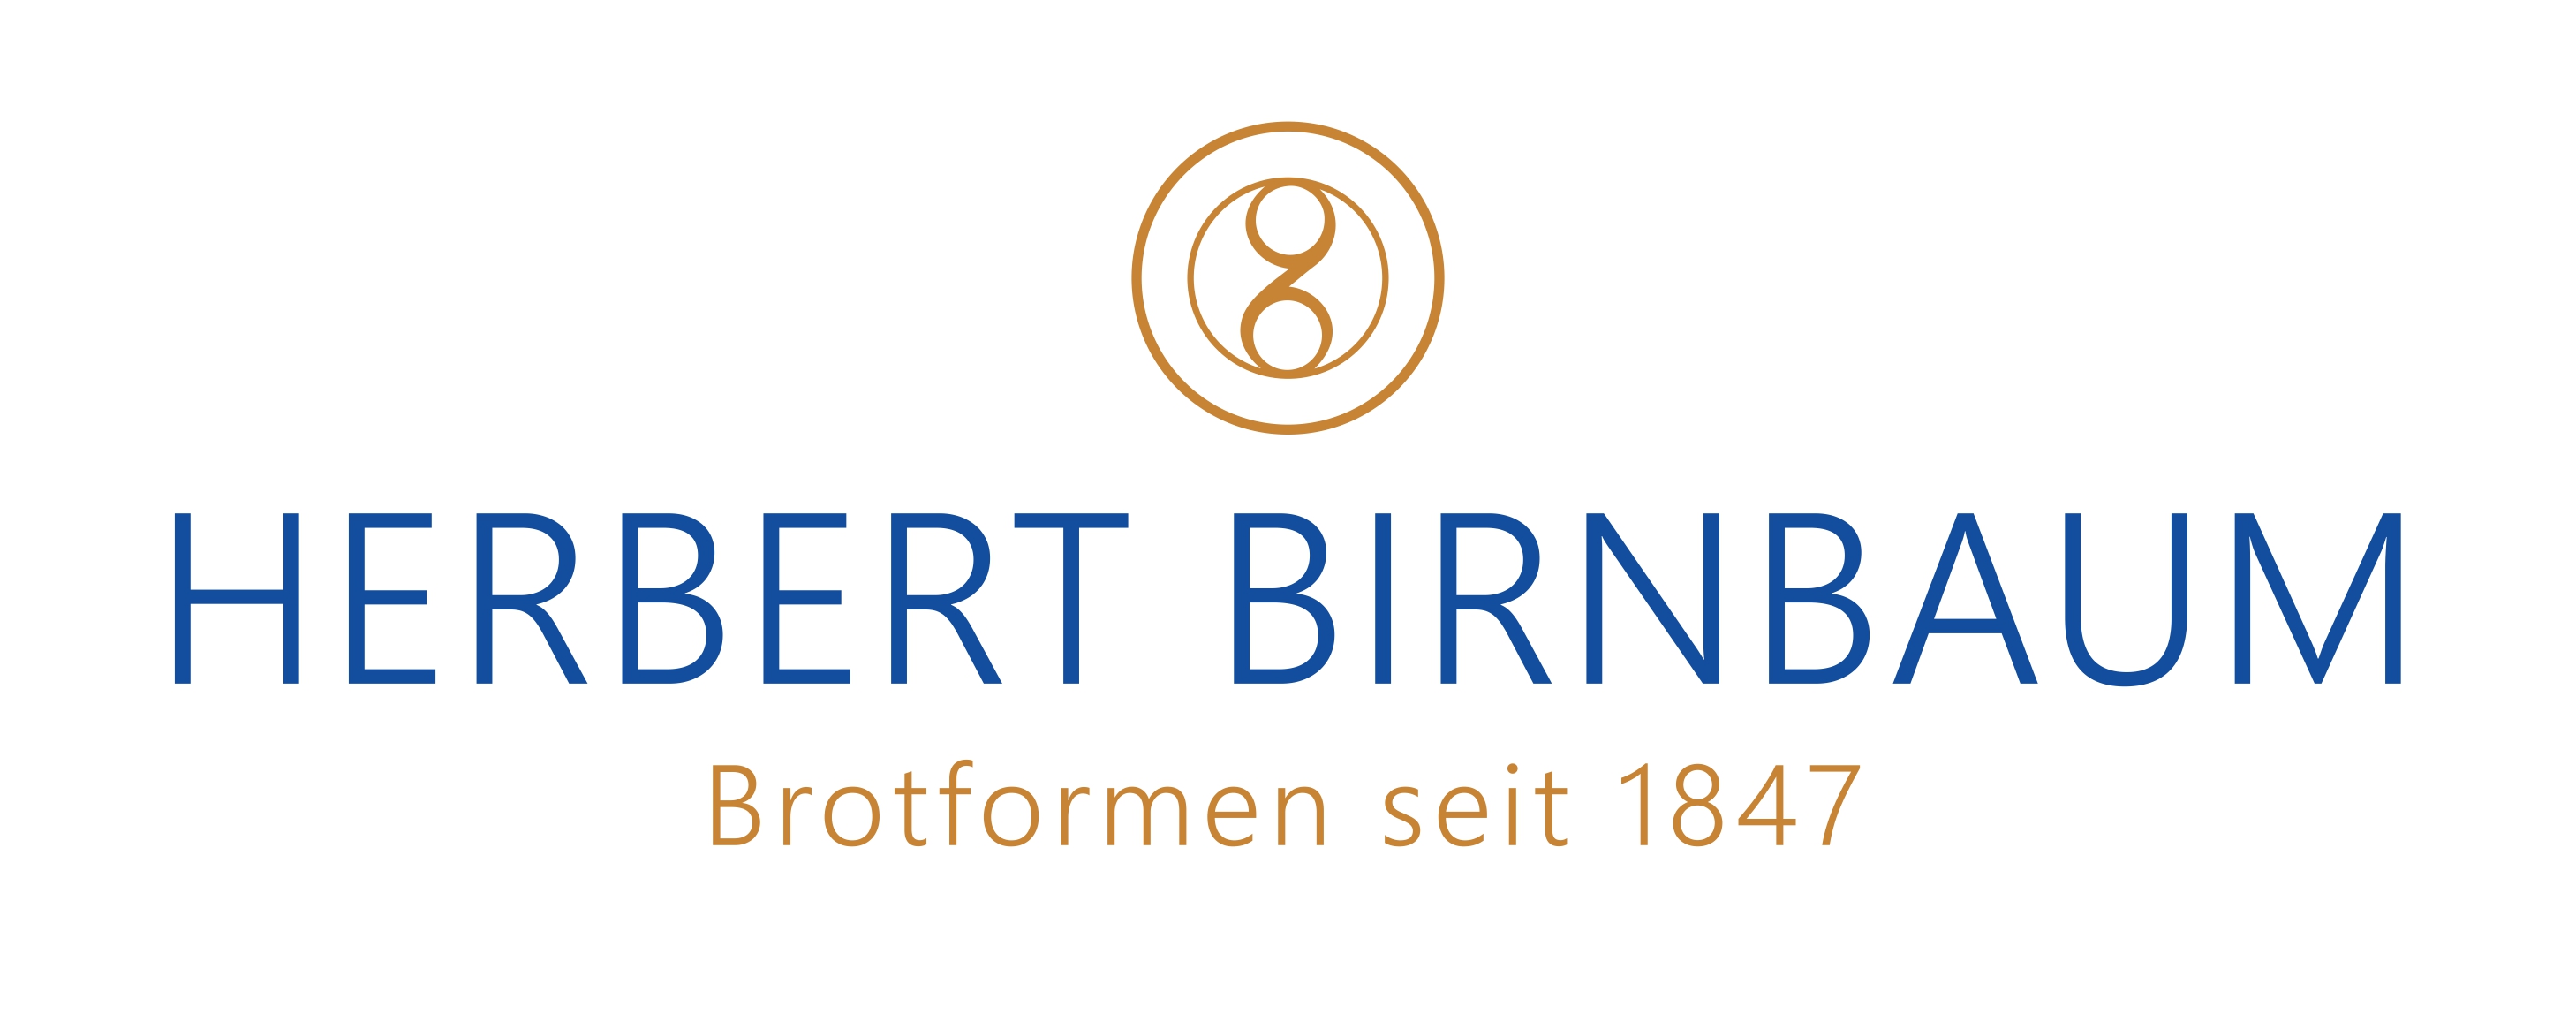 Herbert-Birnbaum-Logo-RGB.jpg?width=2917&height=1157